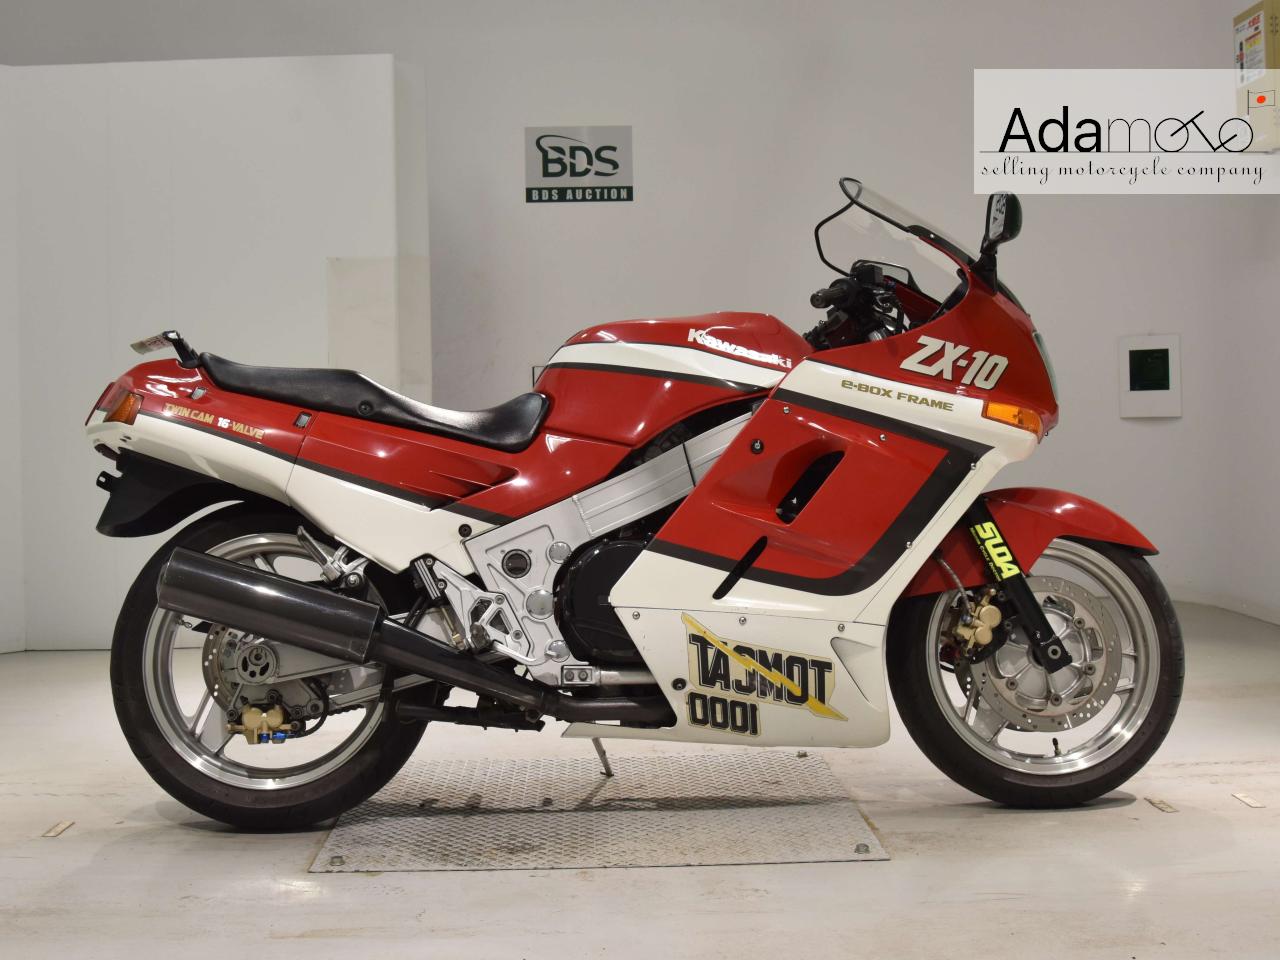 Kawasaki ZX 10 - Adamoto - Motorcycles from Japan